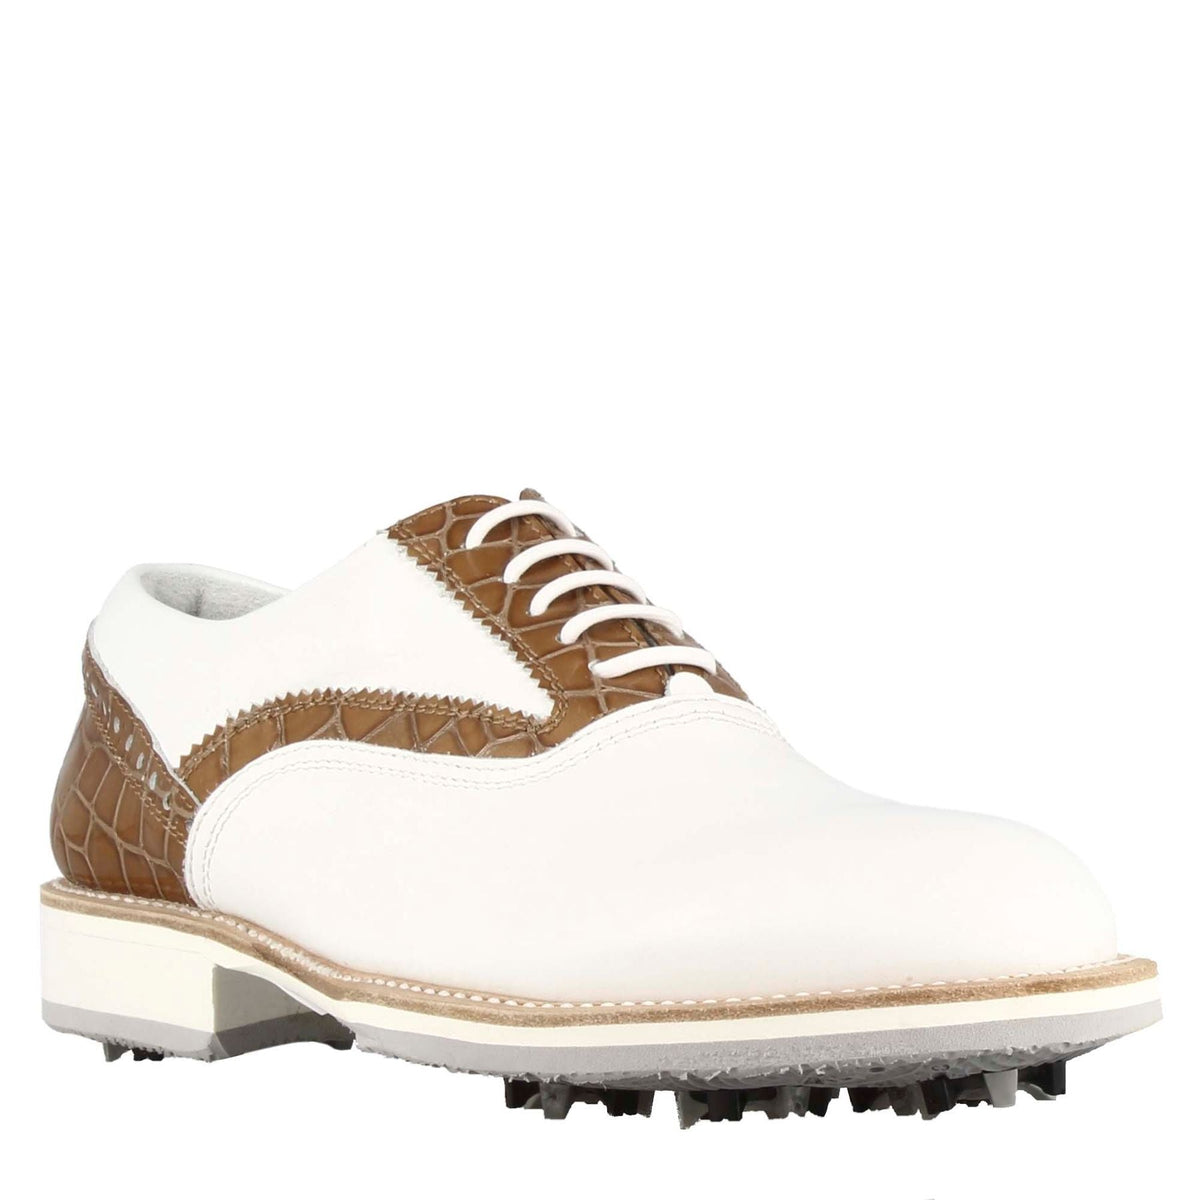 Scarpe da golf artigianali da uomo in pelle bianca con dettagli in colore marrone chiaro.